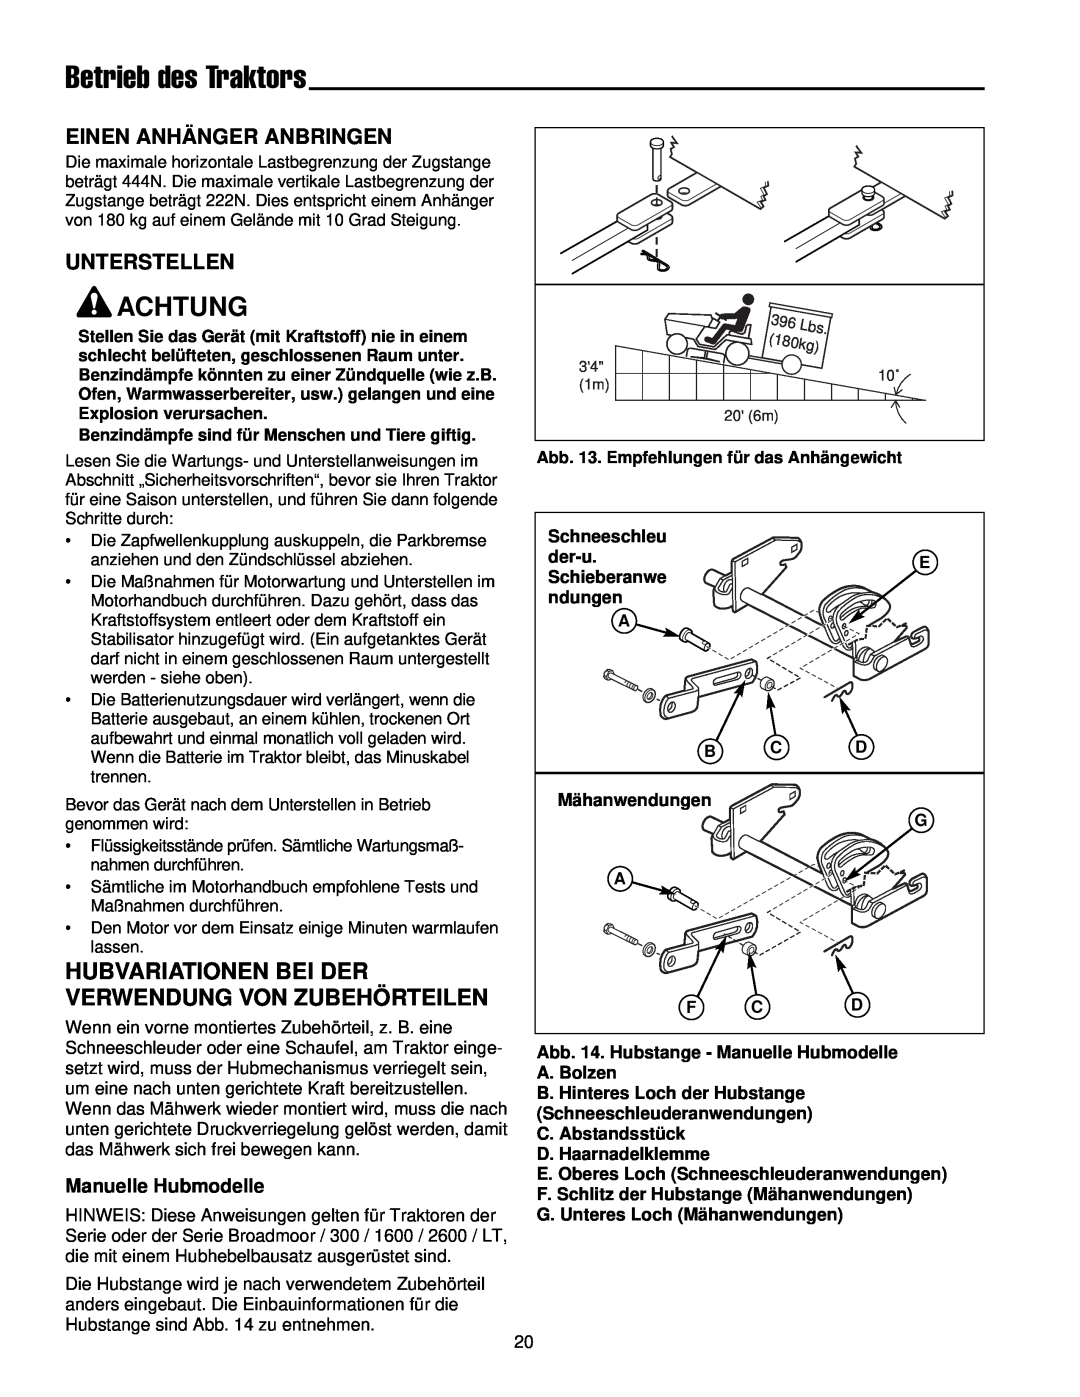 Simplicity 300 manual Hubvariationen Bei Der Verwendung Von Zubehörteilen, Einen Anhänger Anbringen, Unterstellen, Achtung 